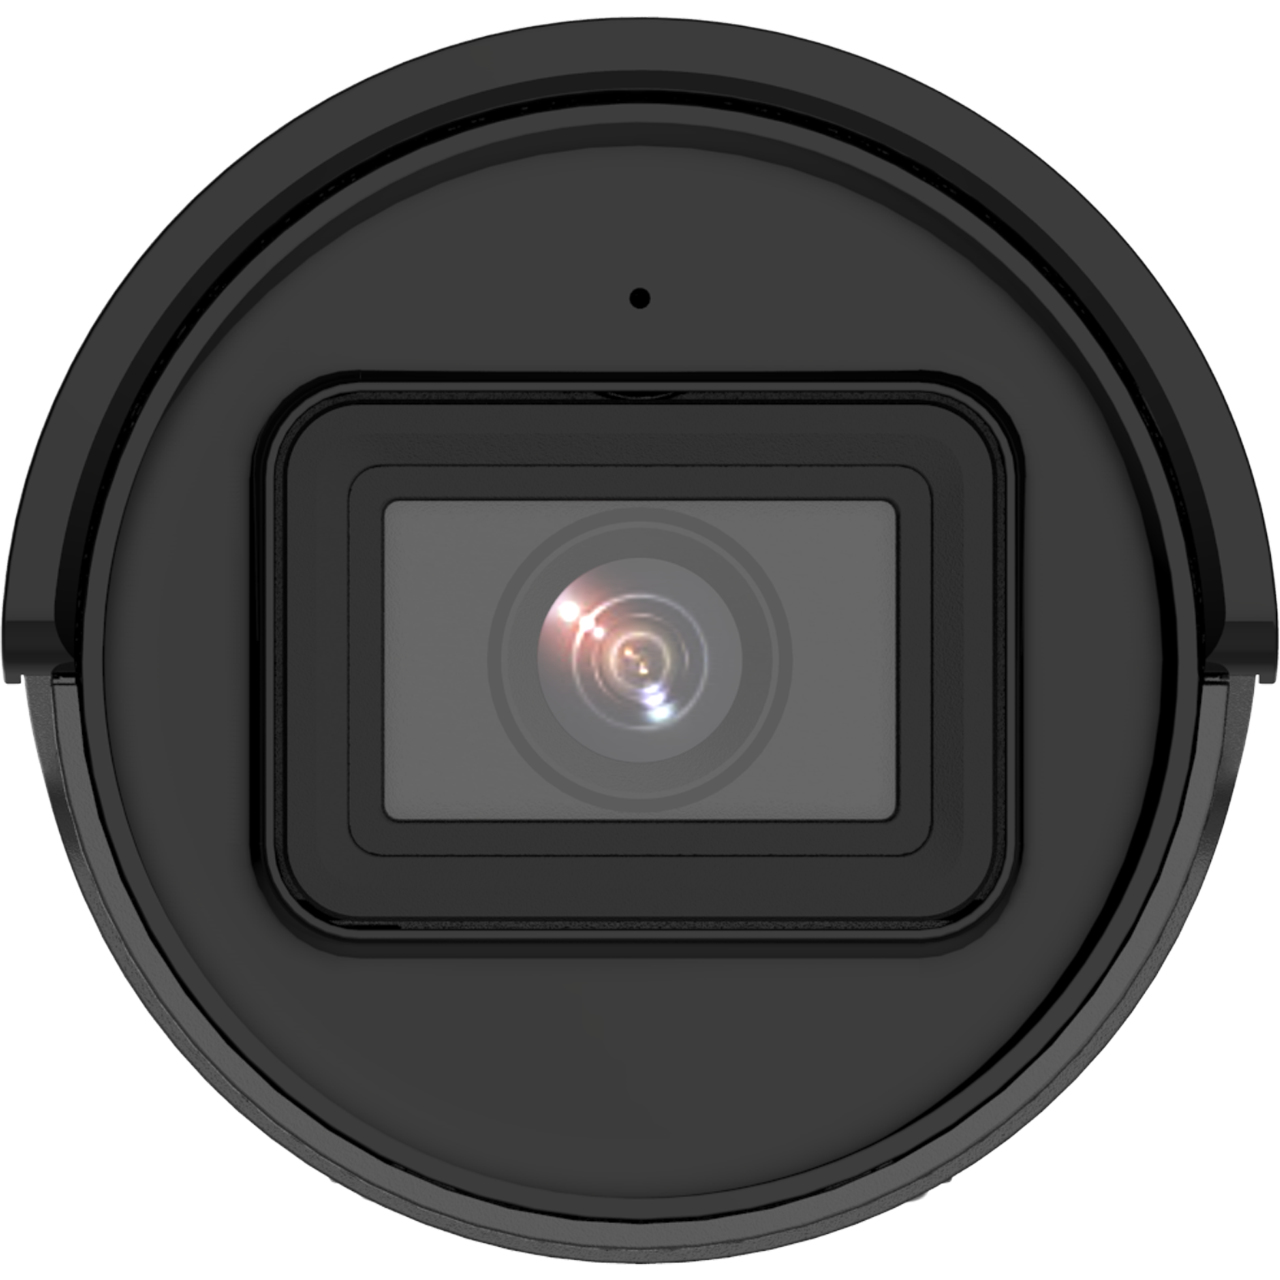 Hikvision 2CD2086G2-IU(2.8mm)(C)(BLACK) IPC 8MP Bullet - Netzwerkkamera